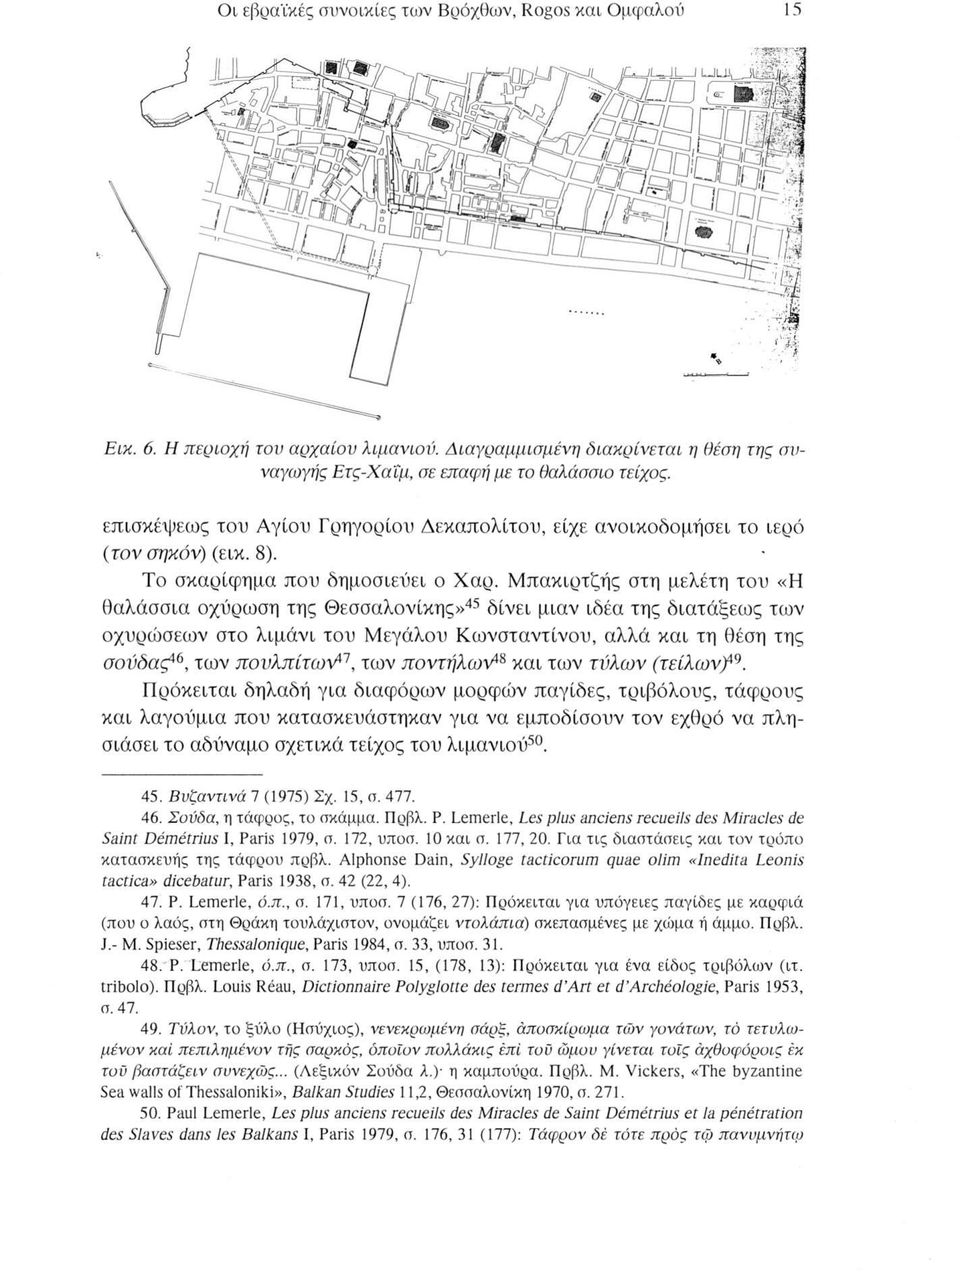 Μπακιρτζής στη μελέτη του «Η θαλάσσια οχύρωση της Θεσσαλονίκης»45 δίνει μιαν ιδέα της διατάξεως των οχυρώσεων στο λιμάνι του Μεγάλου Κωνσταντίνου, αλλά και τη θέση της σούδας46, των πουλπίτων47, των